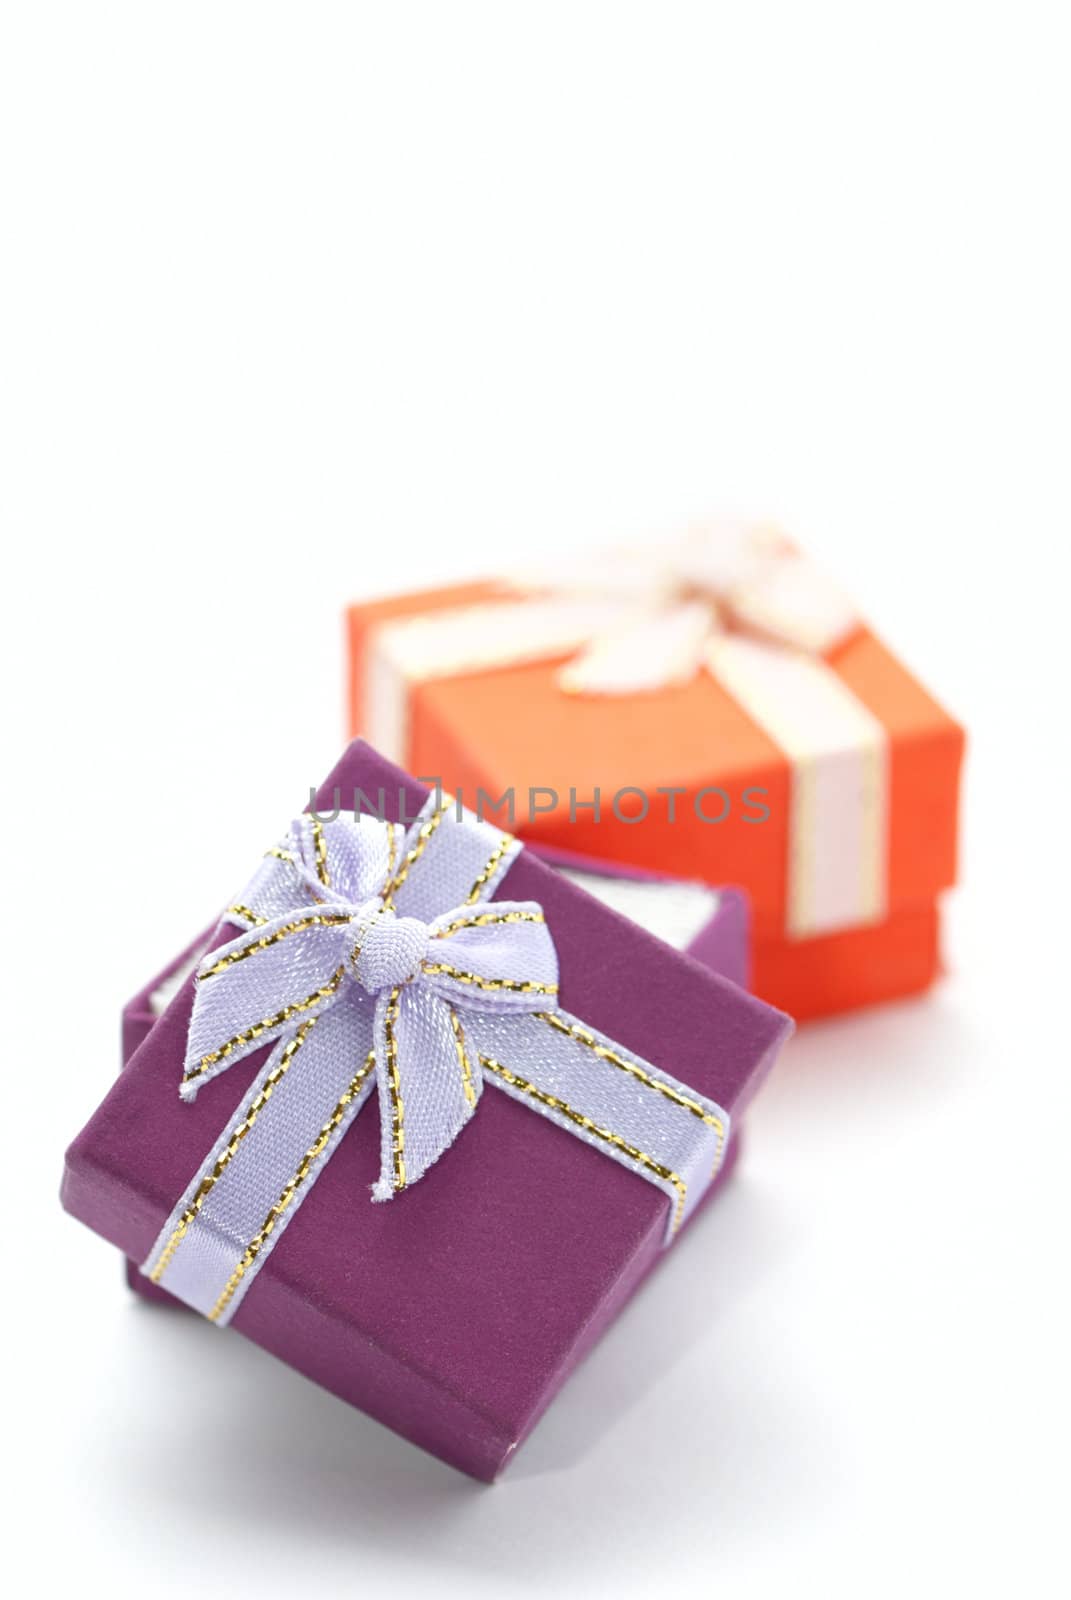 Gift boxes by Olinkau